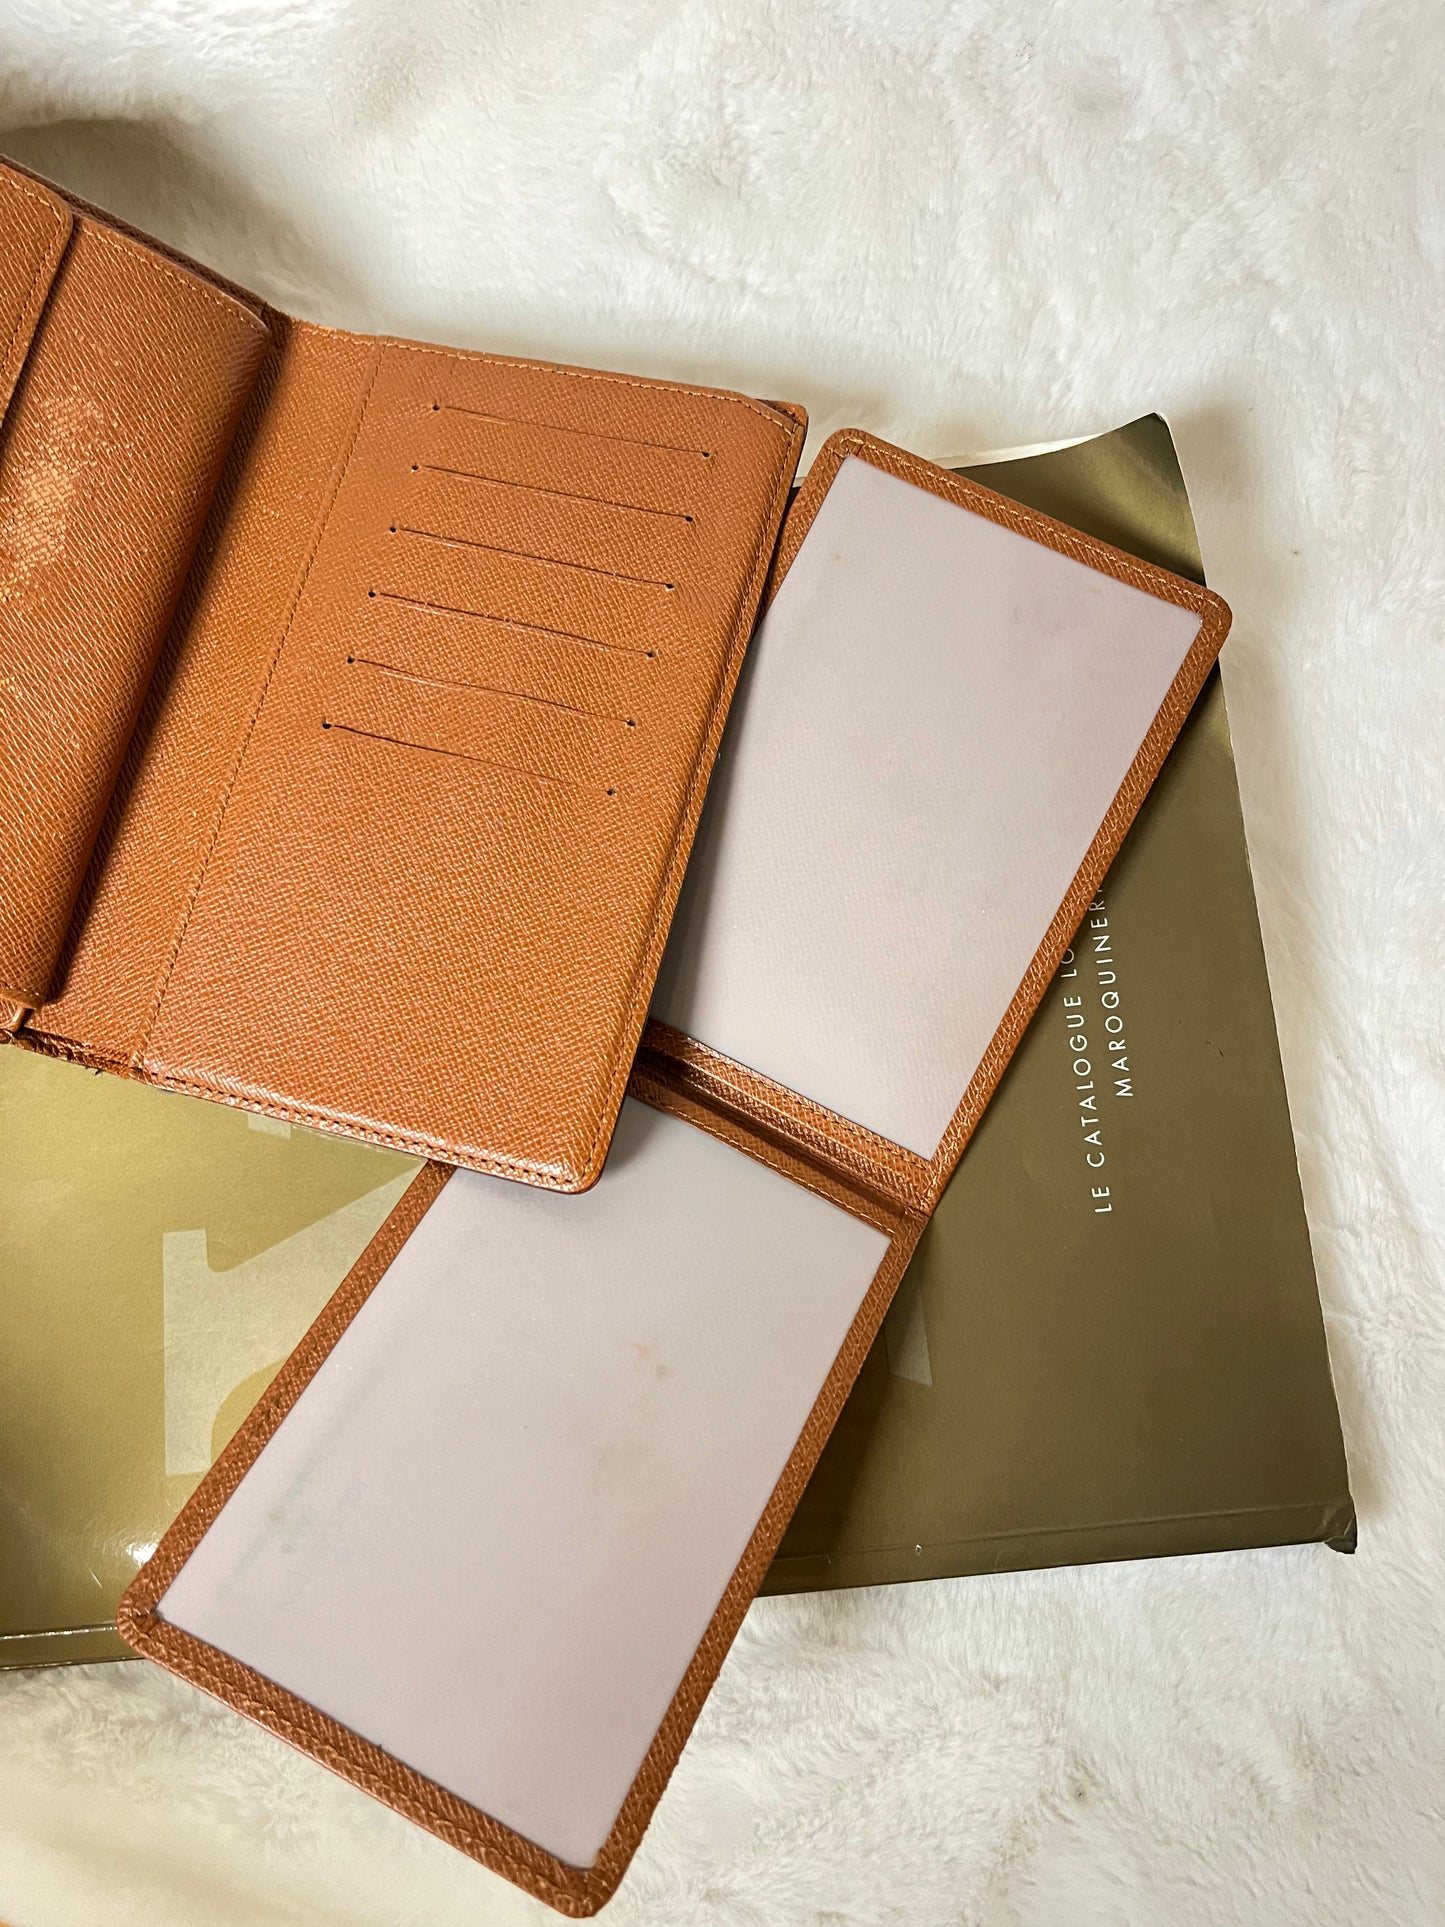 Authentic pre-owned Louis Vuitton Tresor papier trifold wallet